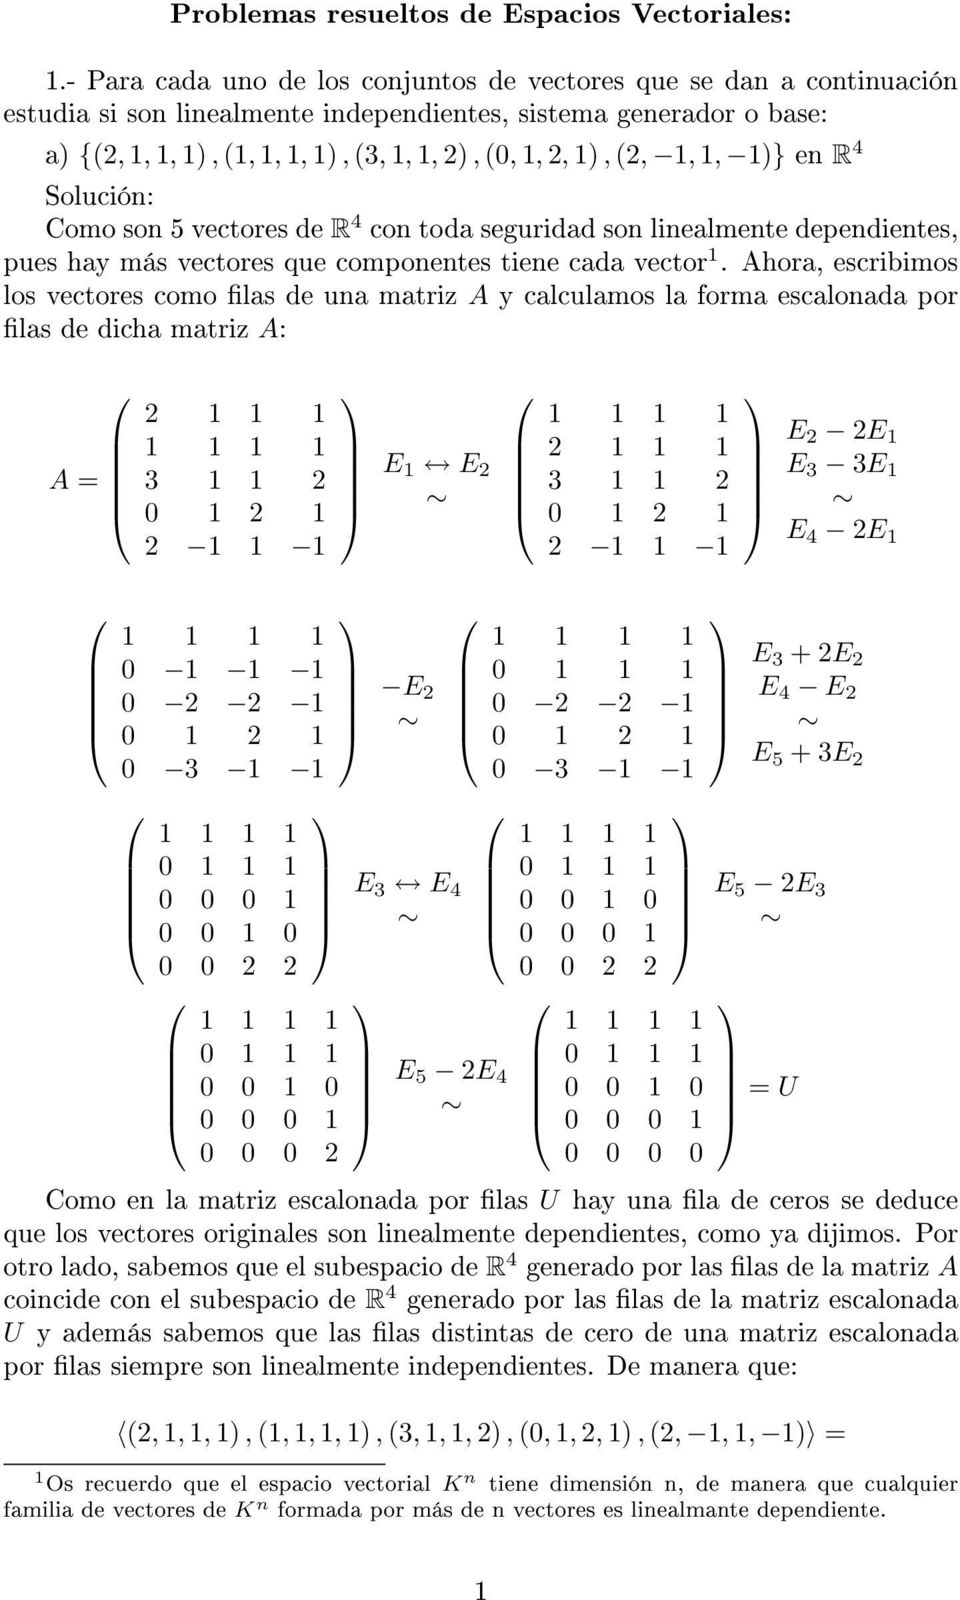 cada vector 1 Ahora, escribimos los vectores como las de una matriz A y calculamos la forma escalonada por las de dicha matriz A: A = 2 1 1 1 1 1 1 1 3 1 1 2 0 1 2 1 2 1 1 1 E 1 E 2 1 1 1 1 2 1 1 1 3